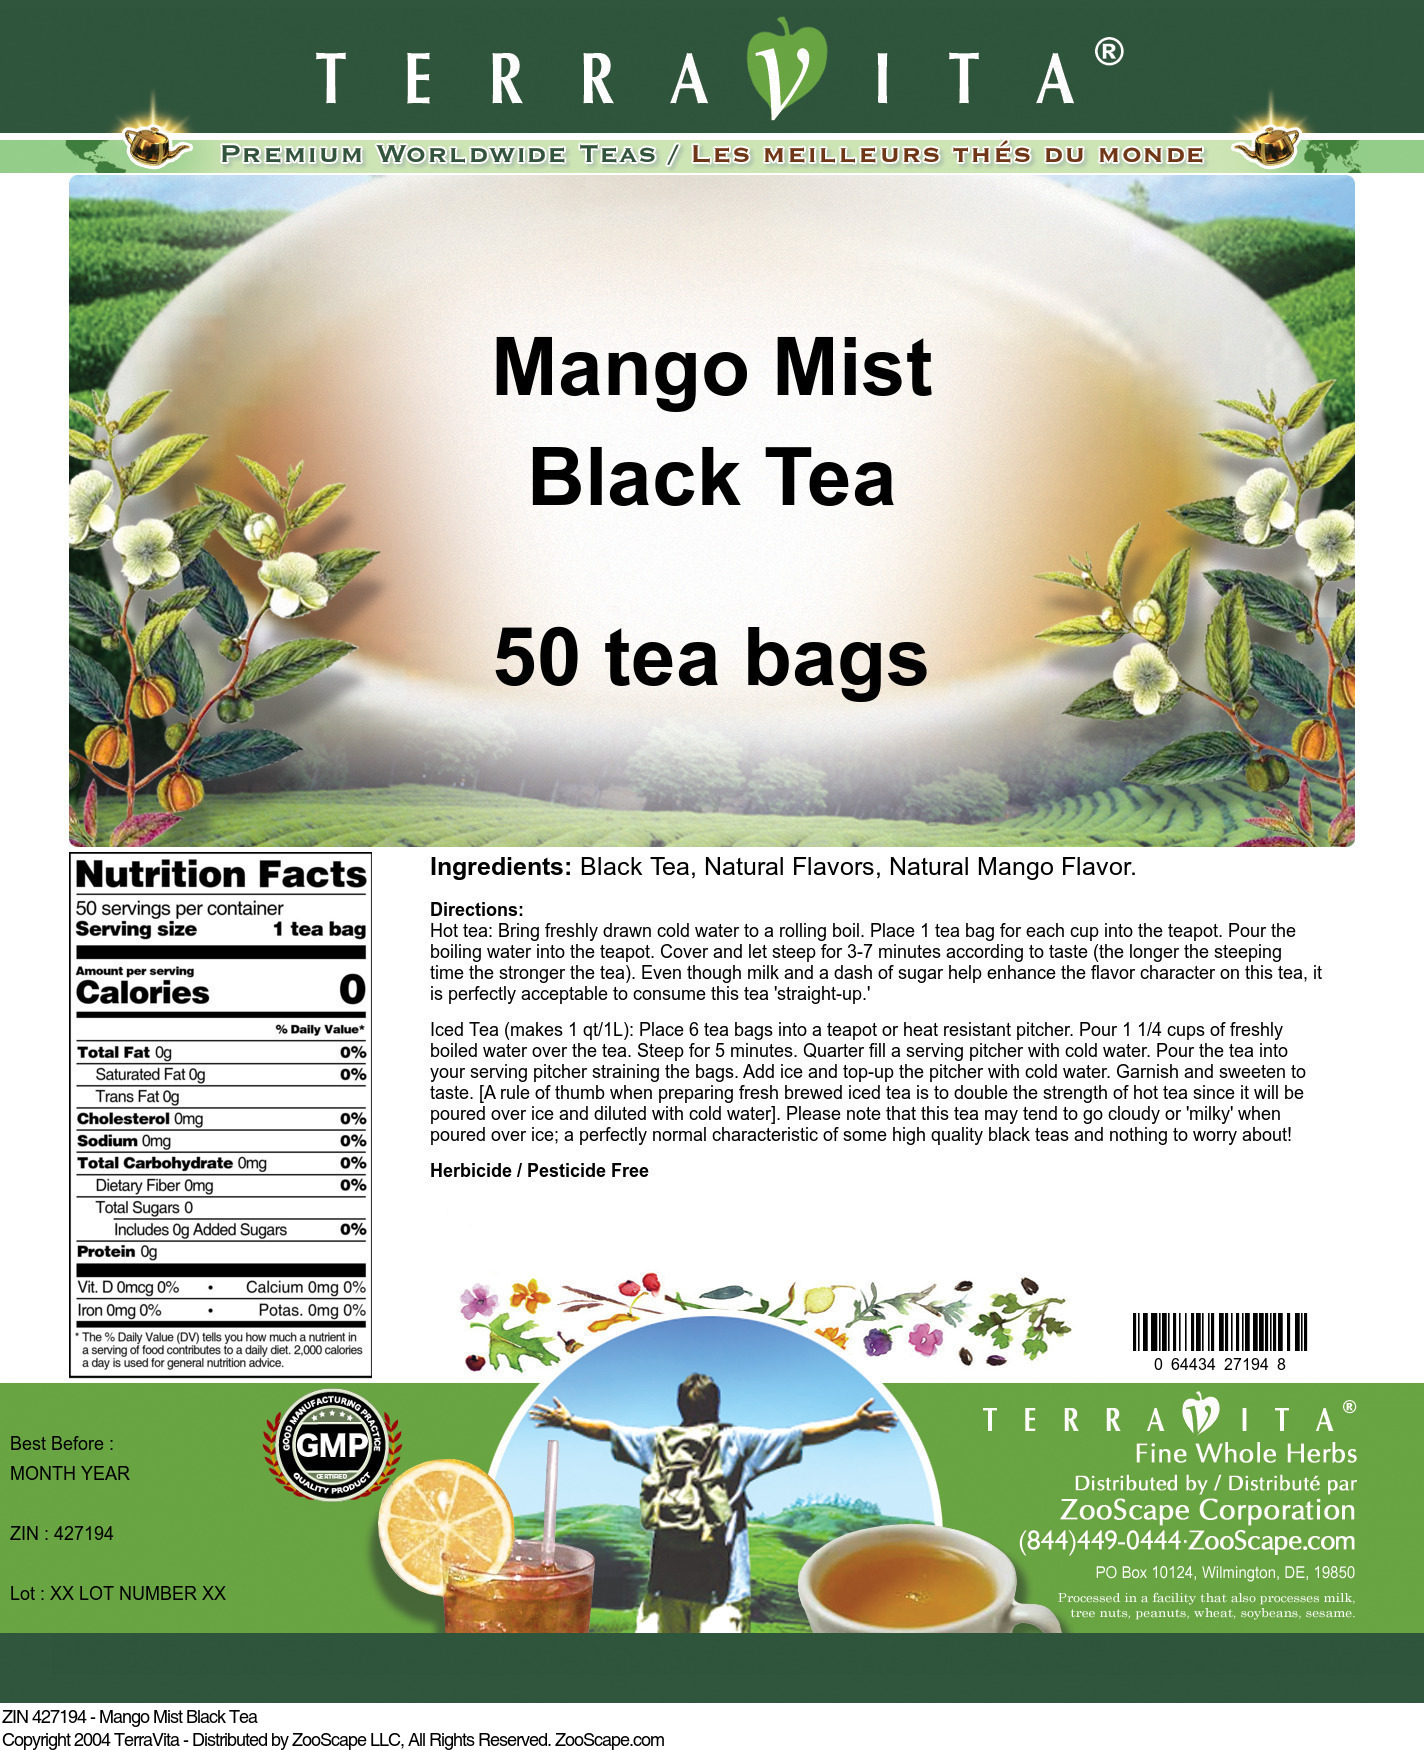 Mango Mist Black Tea - Label